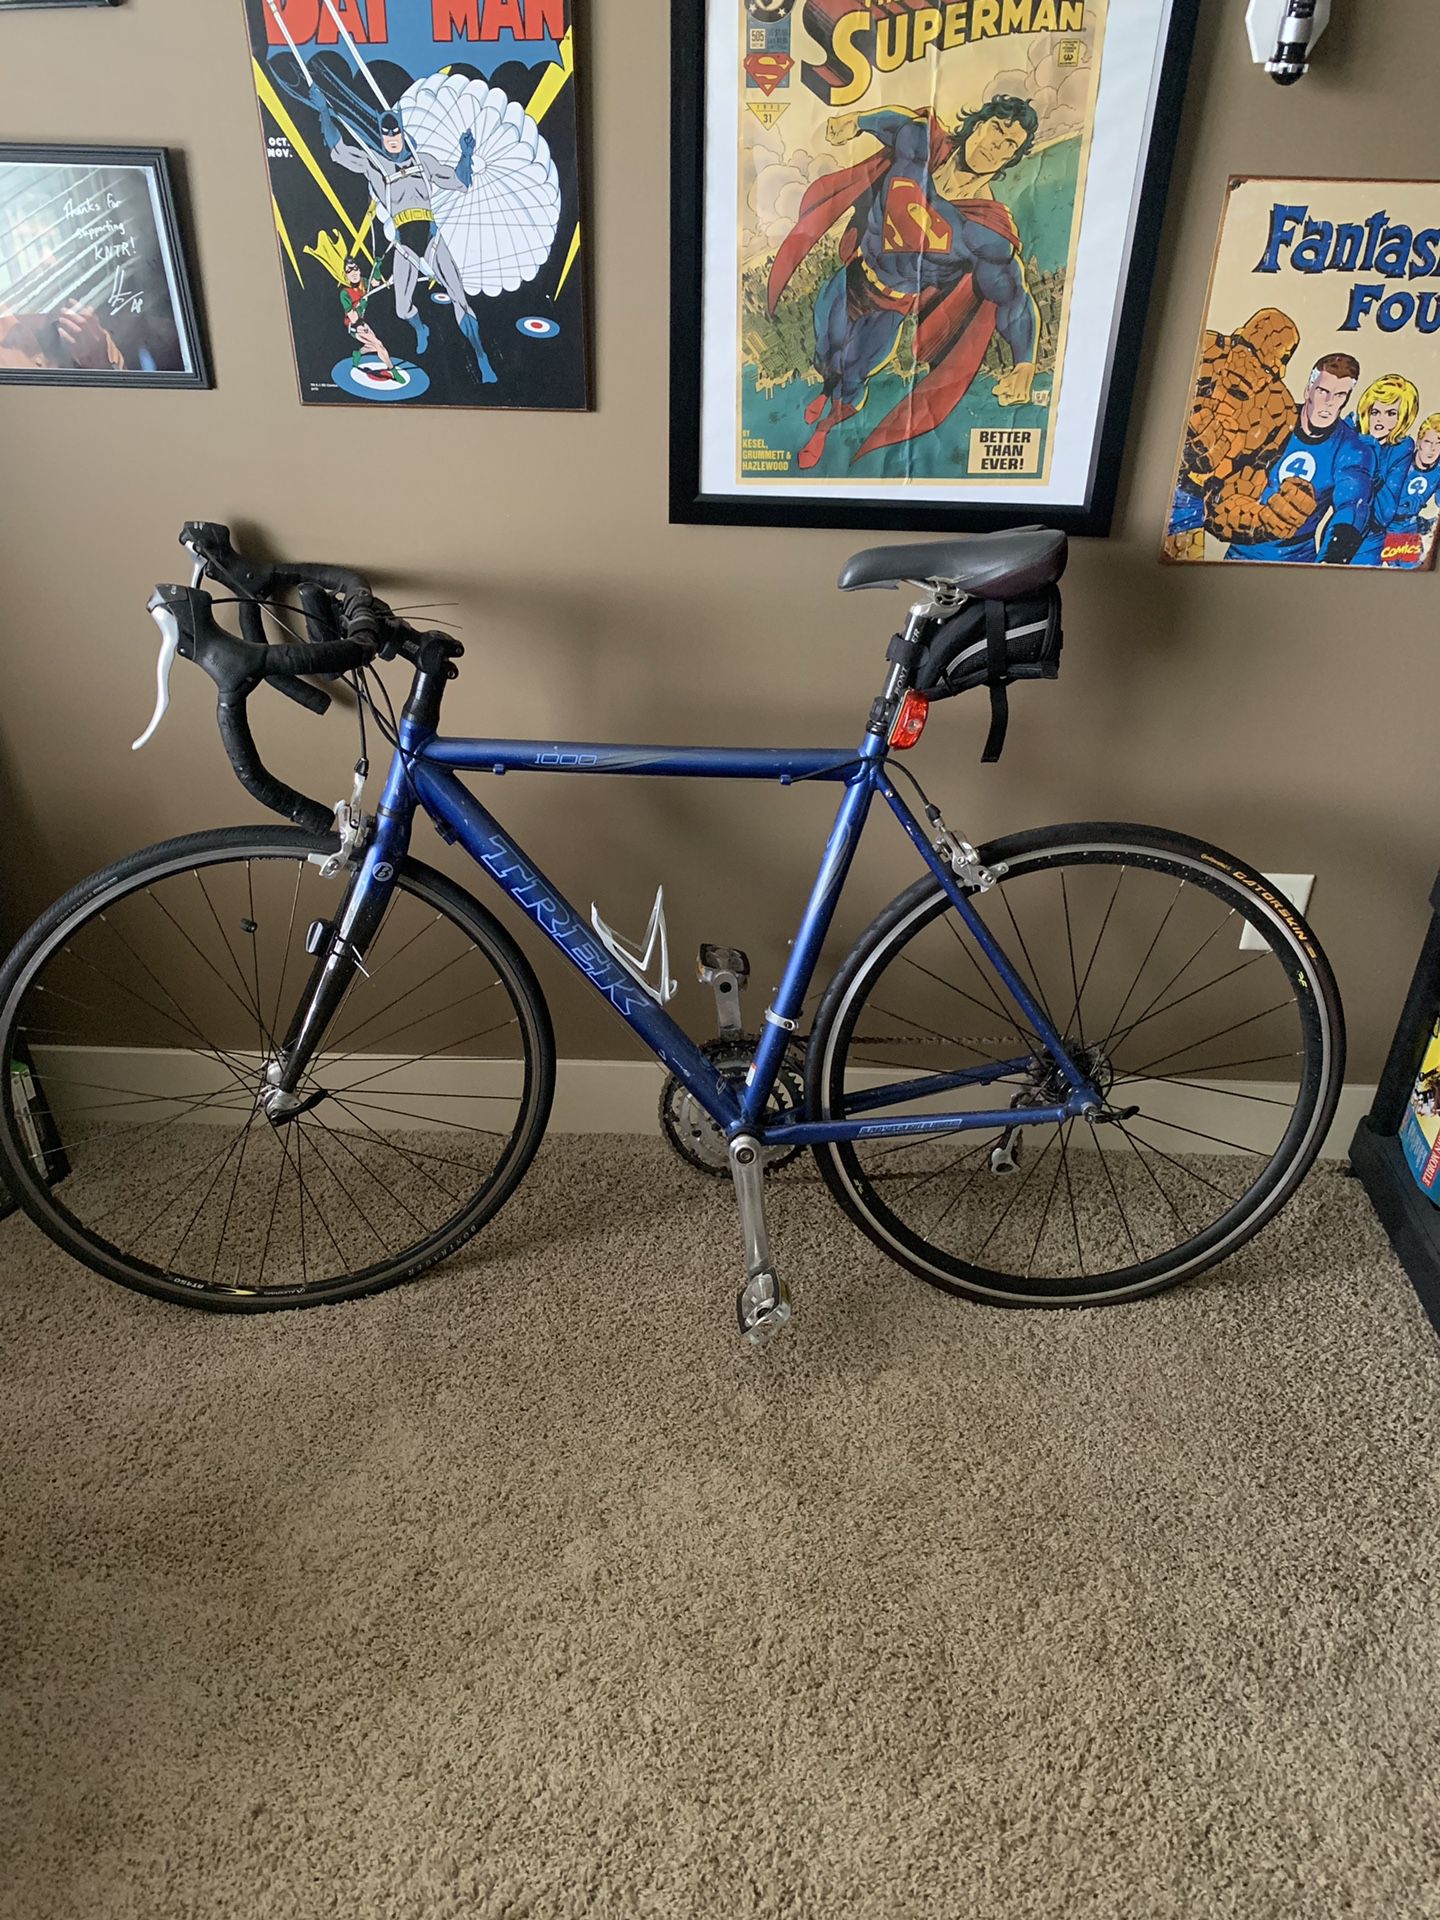 Full size Trek bike